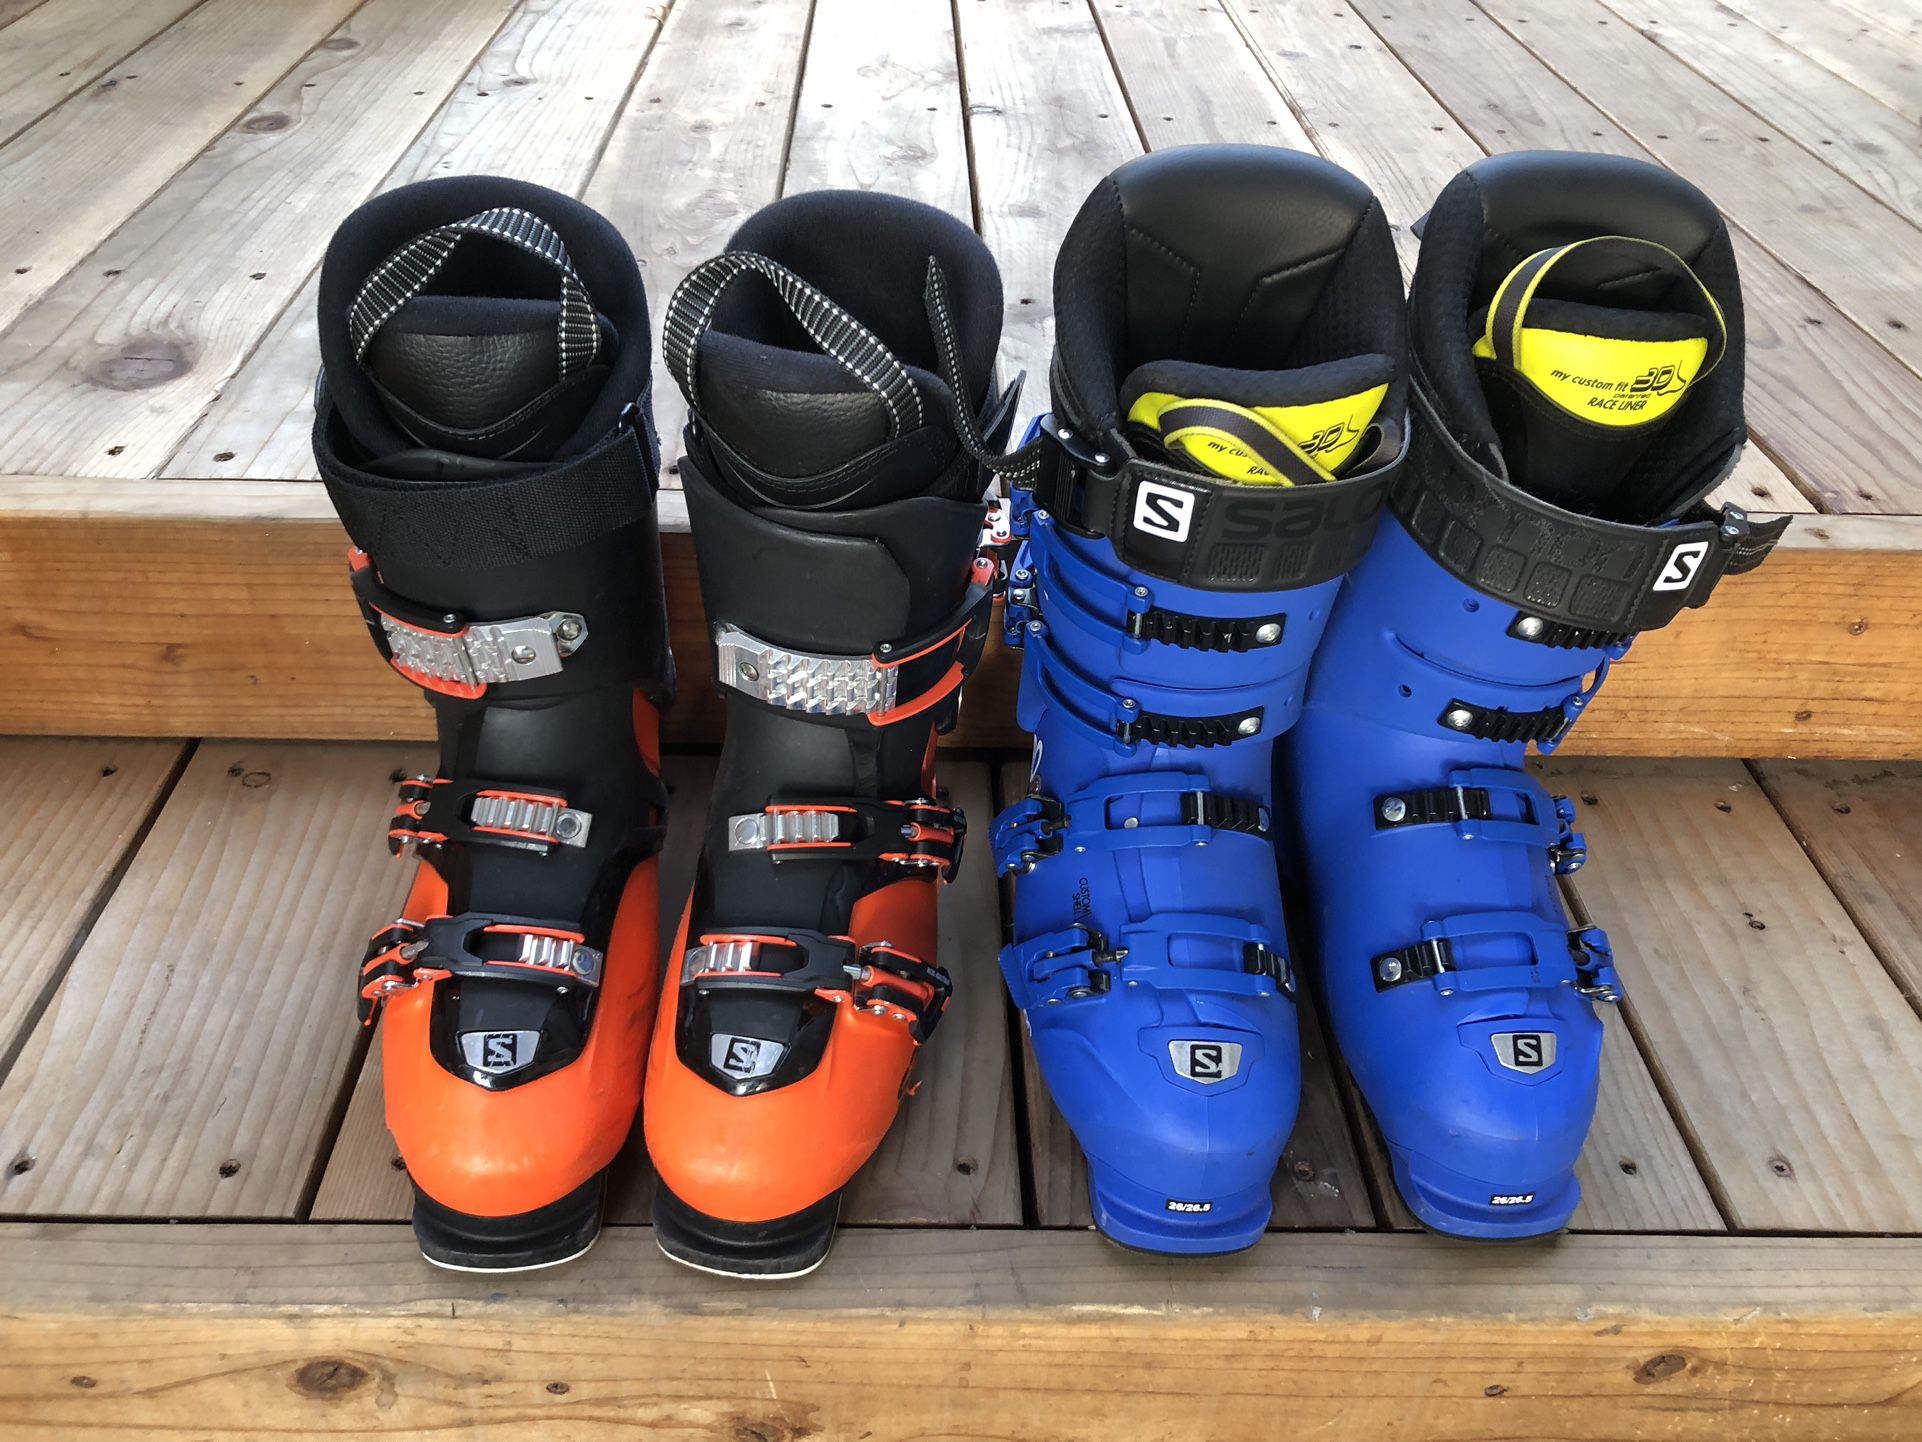 Salomon Ski Boots 26.5 Men’s - QST Access 70T  $79 & S/XPRO 130 Blue $149